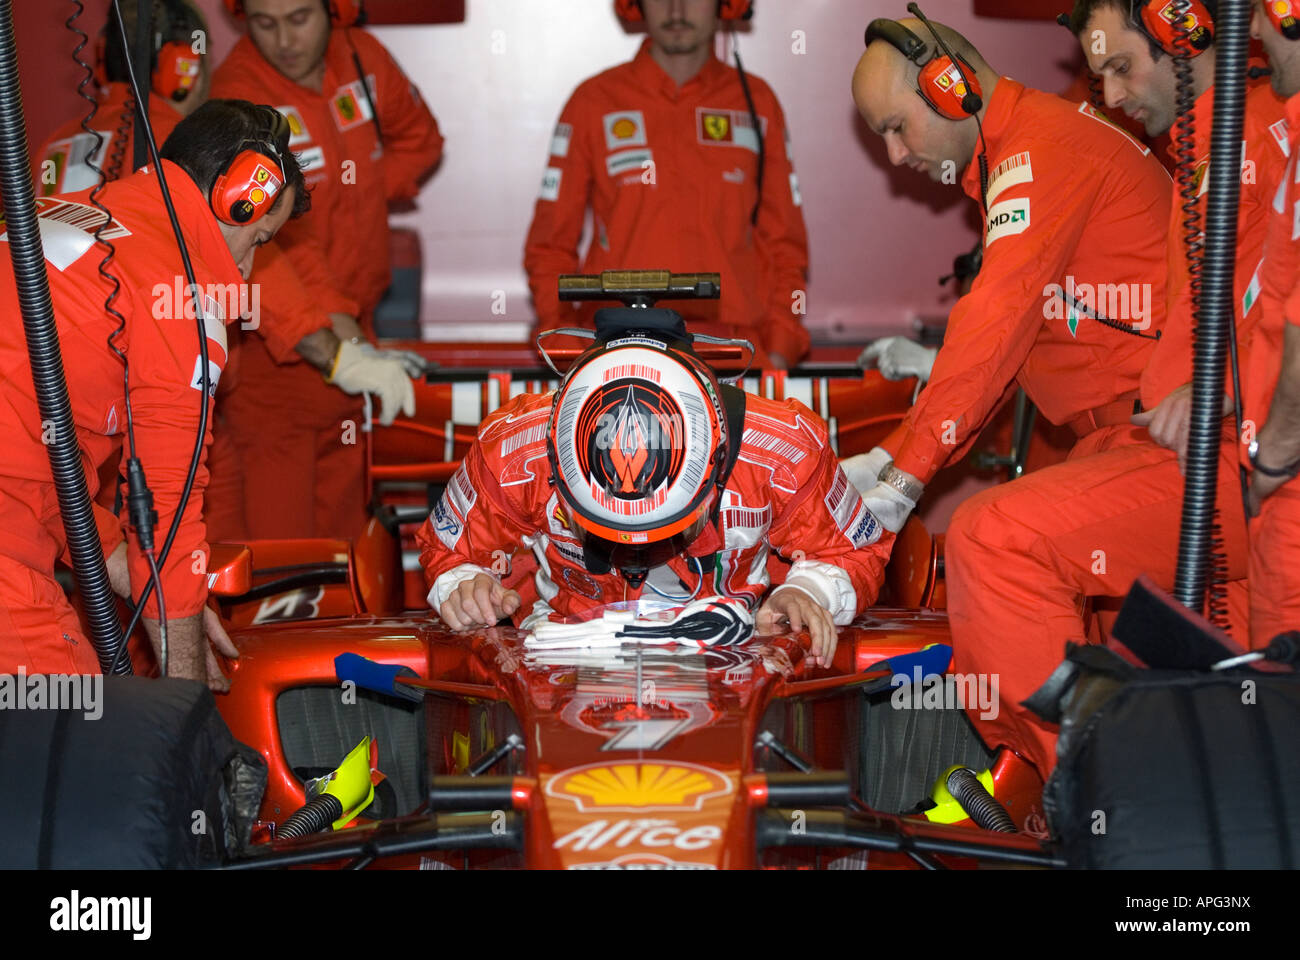 Kimi RAEIKKOENEN (FIN) in Ferrari F2008 Formula 1 racecar Foto Stock